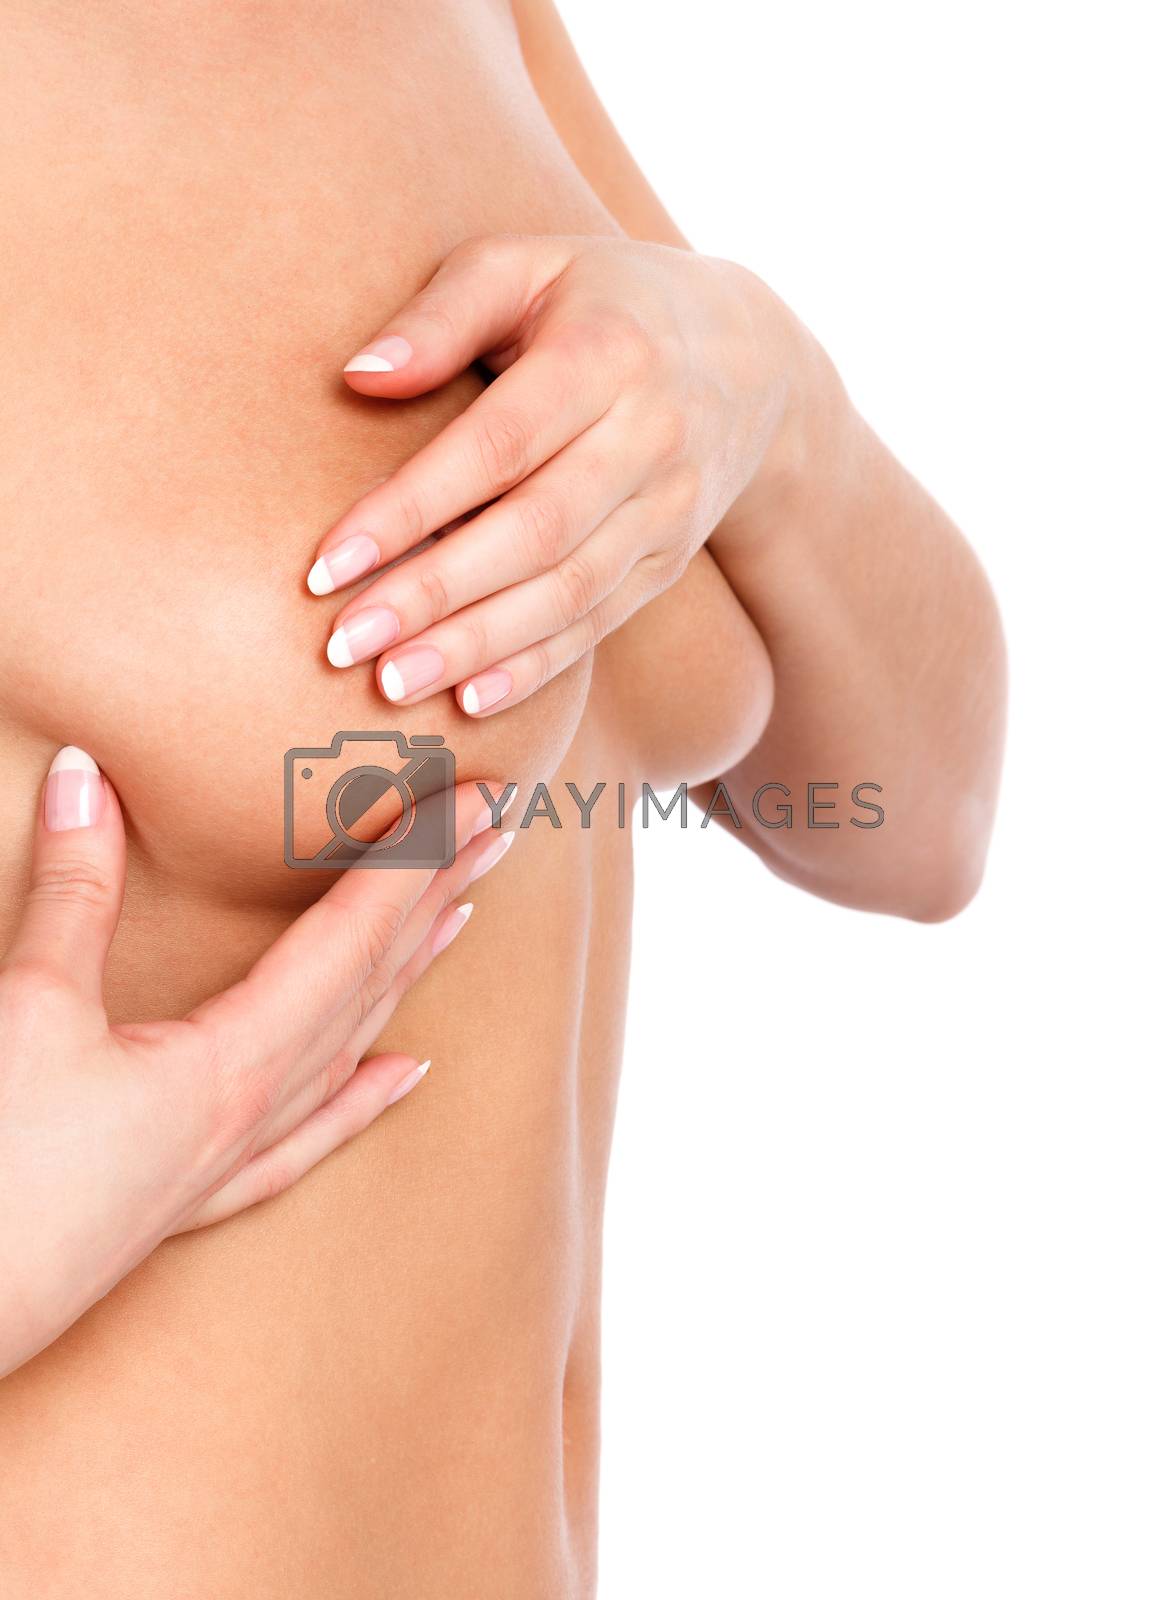 blas herrera add photo naked girls breast